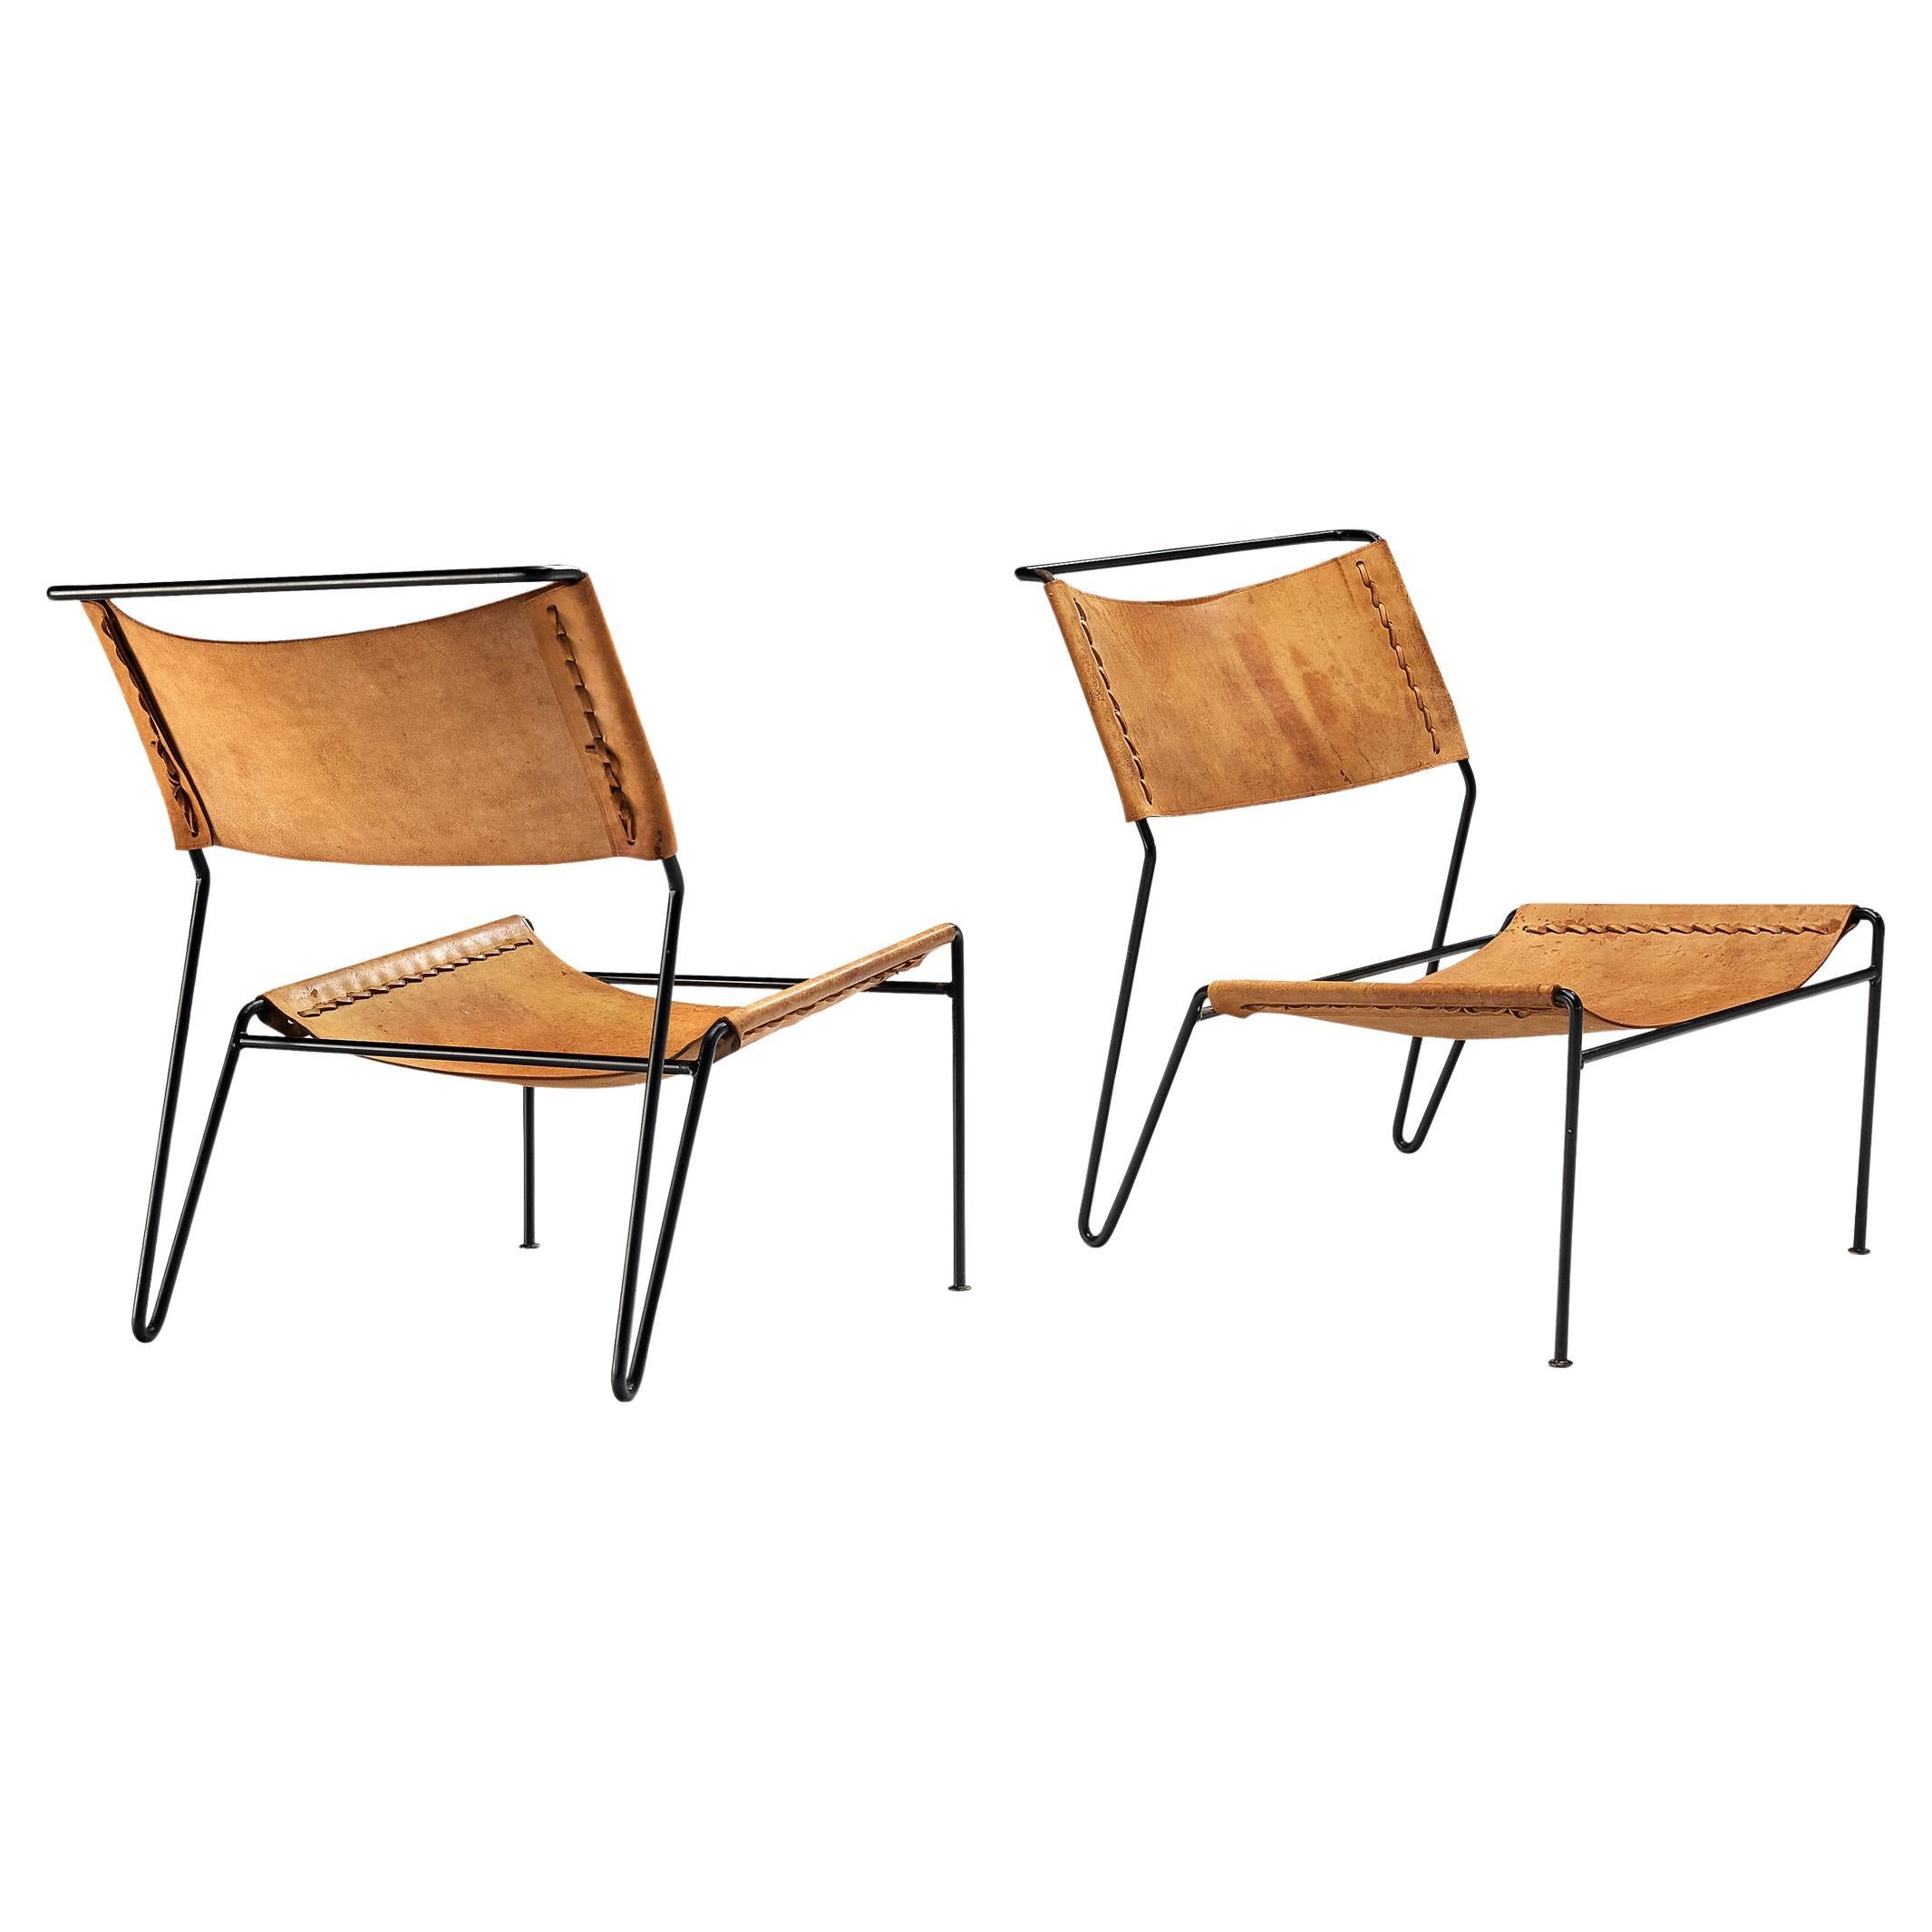 A. Dolleman for Metz & Co Paire de fauteuils modernes en cuir